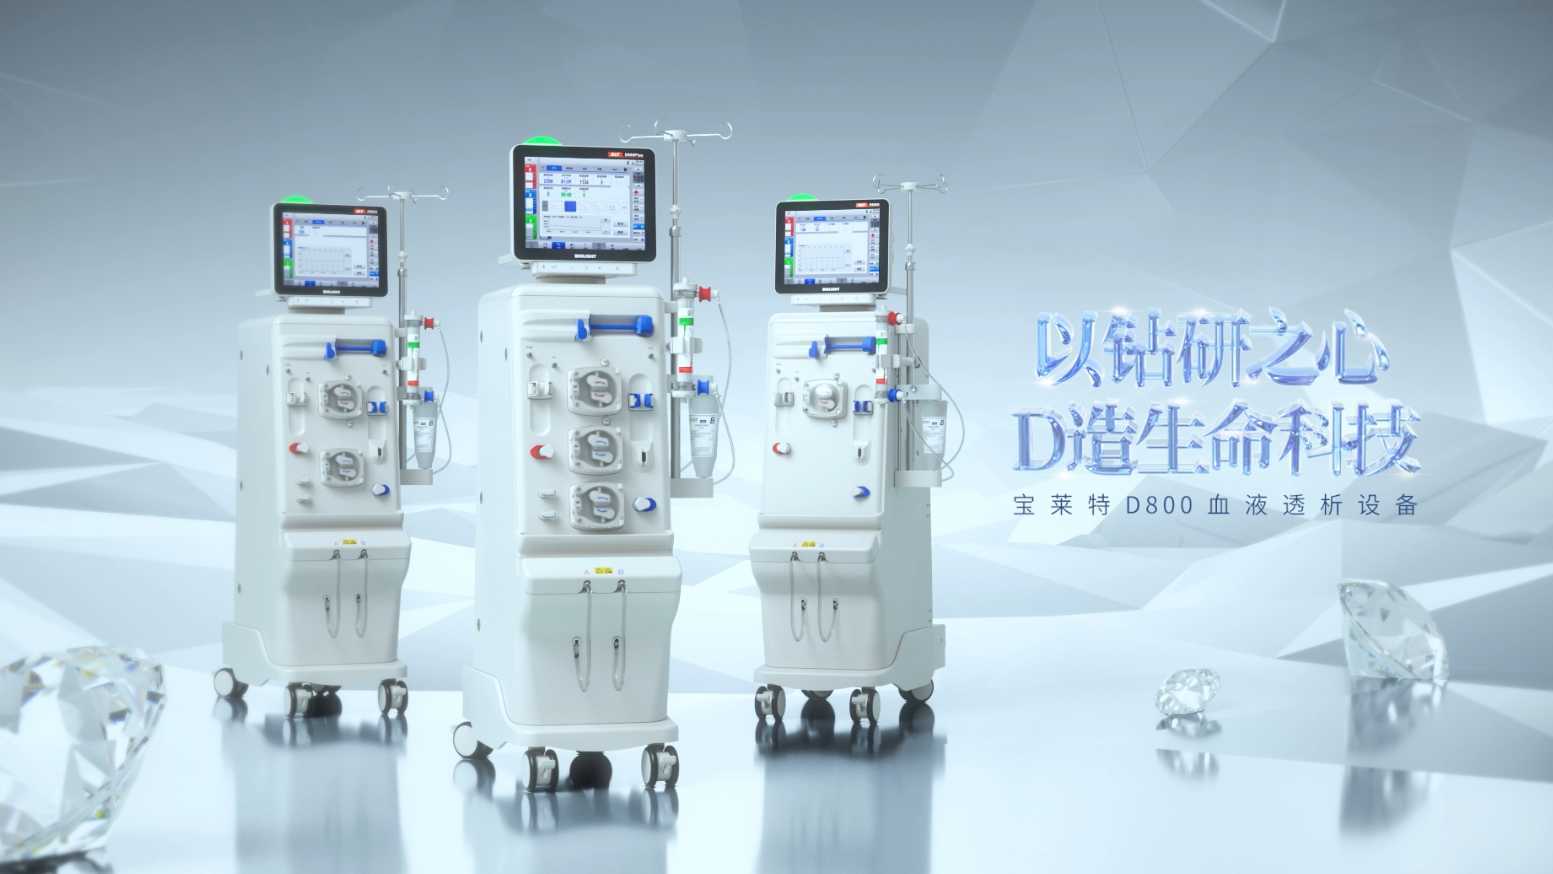 JIMU-宝莱特D800系列血液透析设备产品片